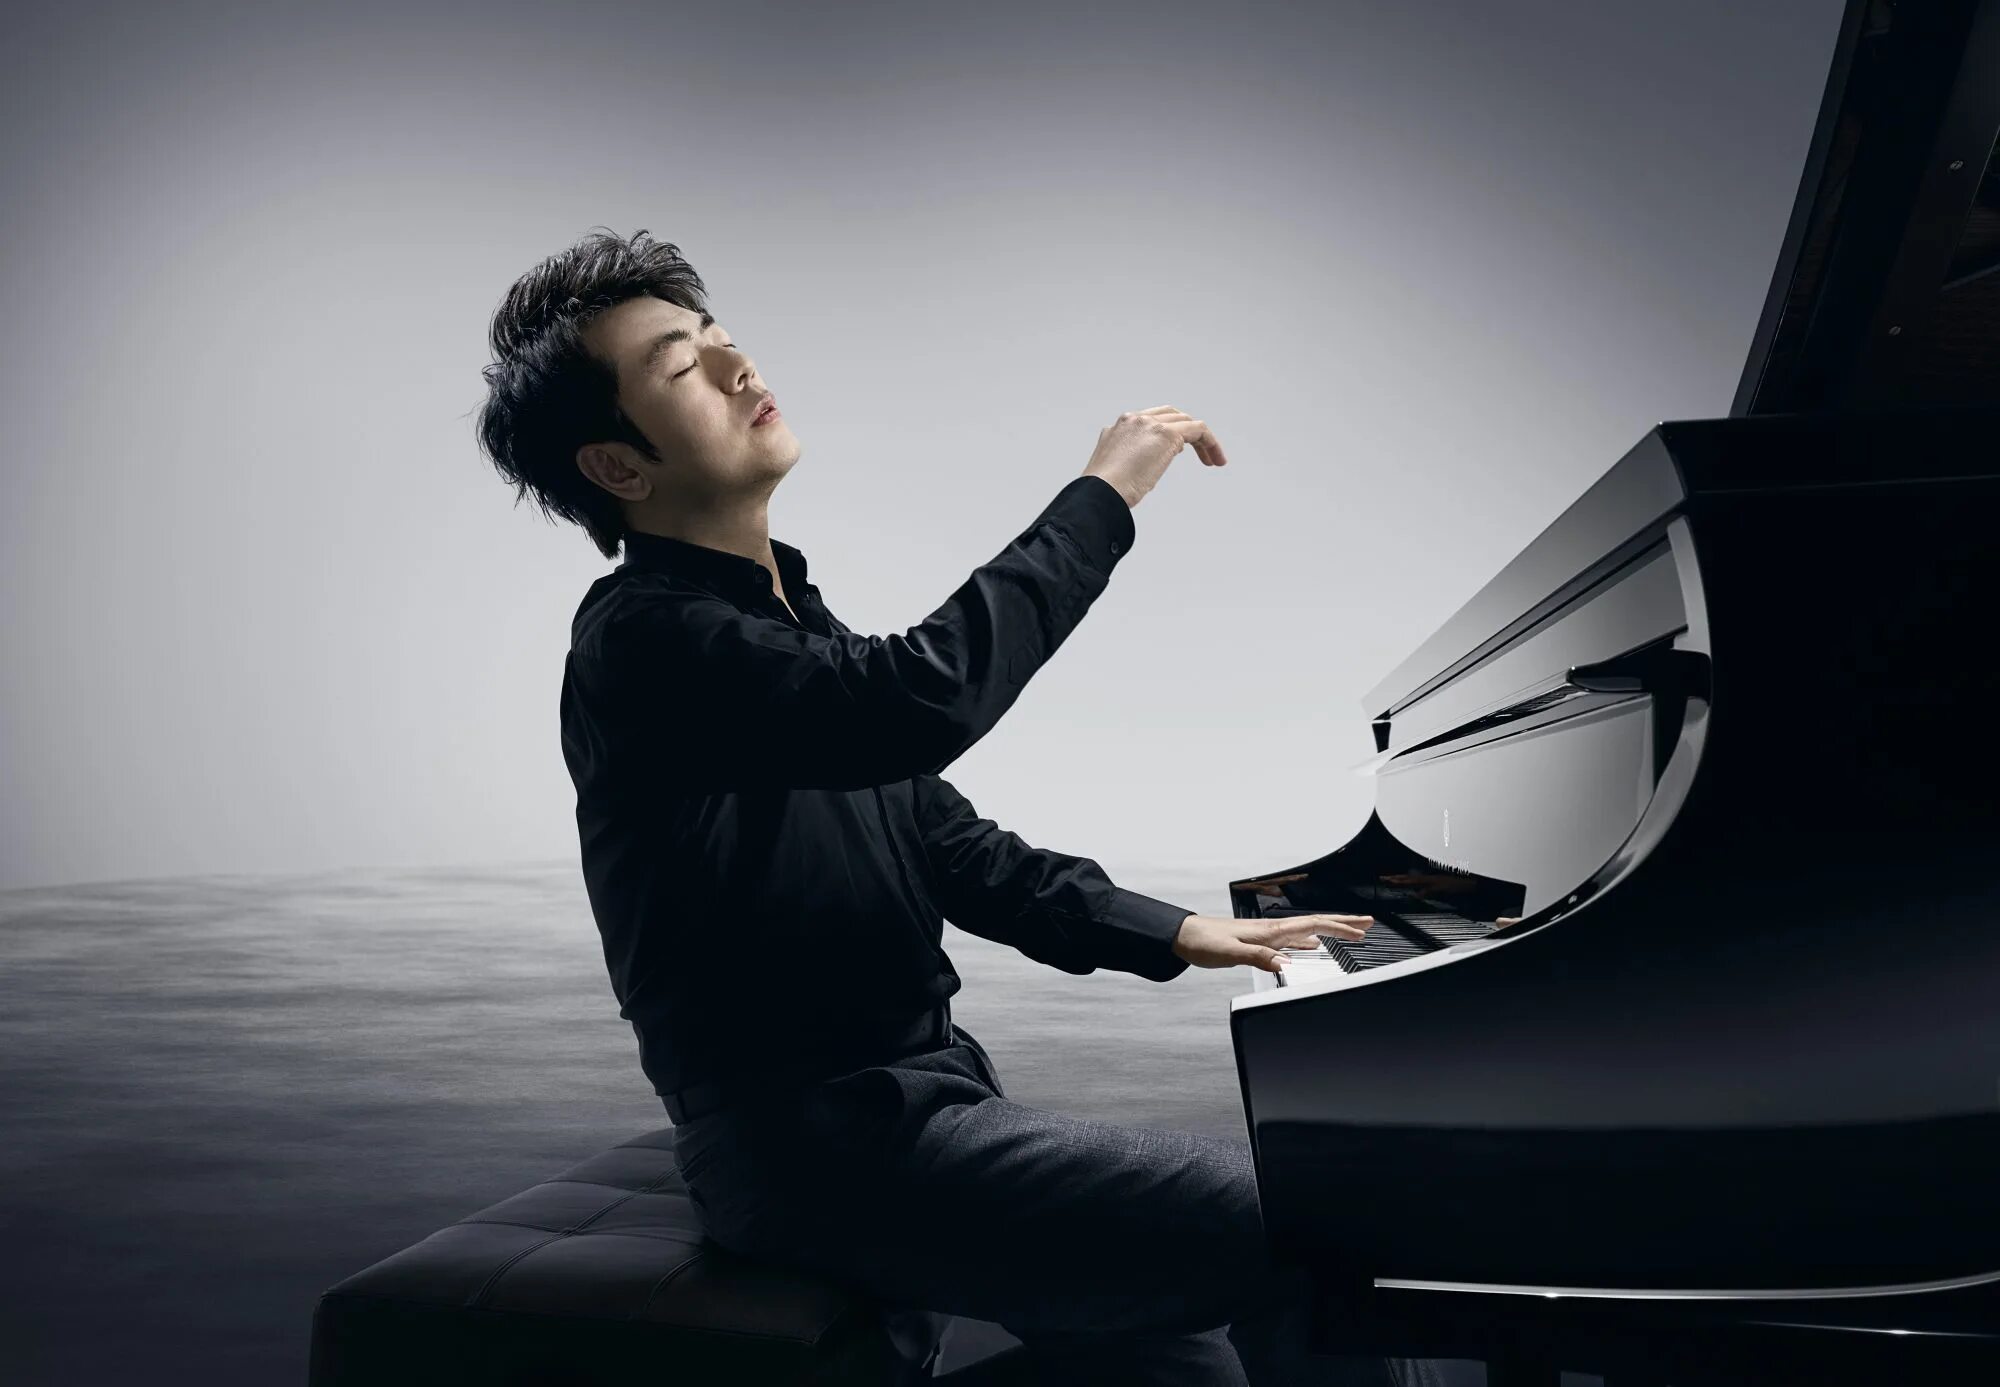 Ланг Ланг пианист. Китайский пианист виртуоз Лан Лан. Ланг Ланканг пианист китайский. Lang lang пианист.